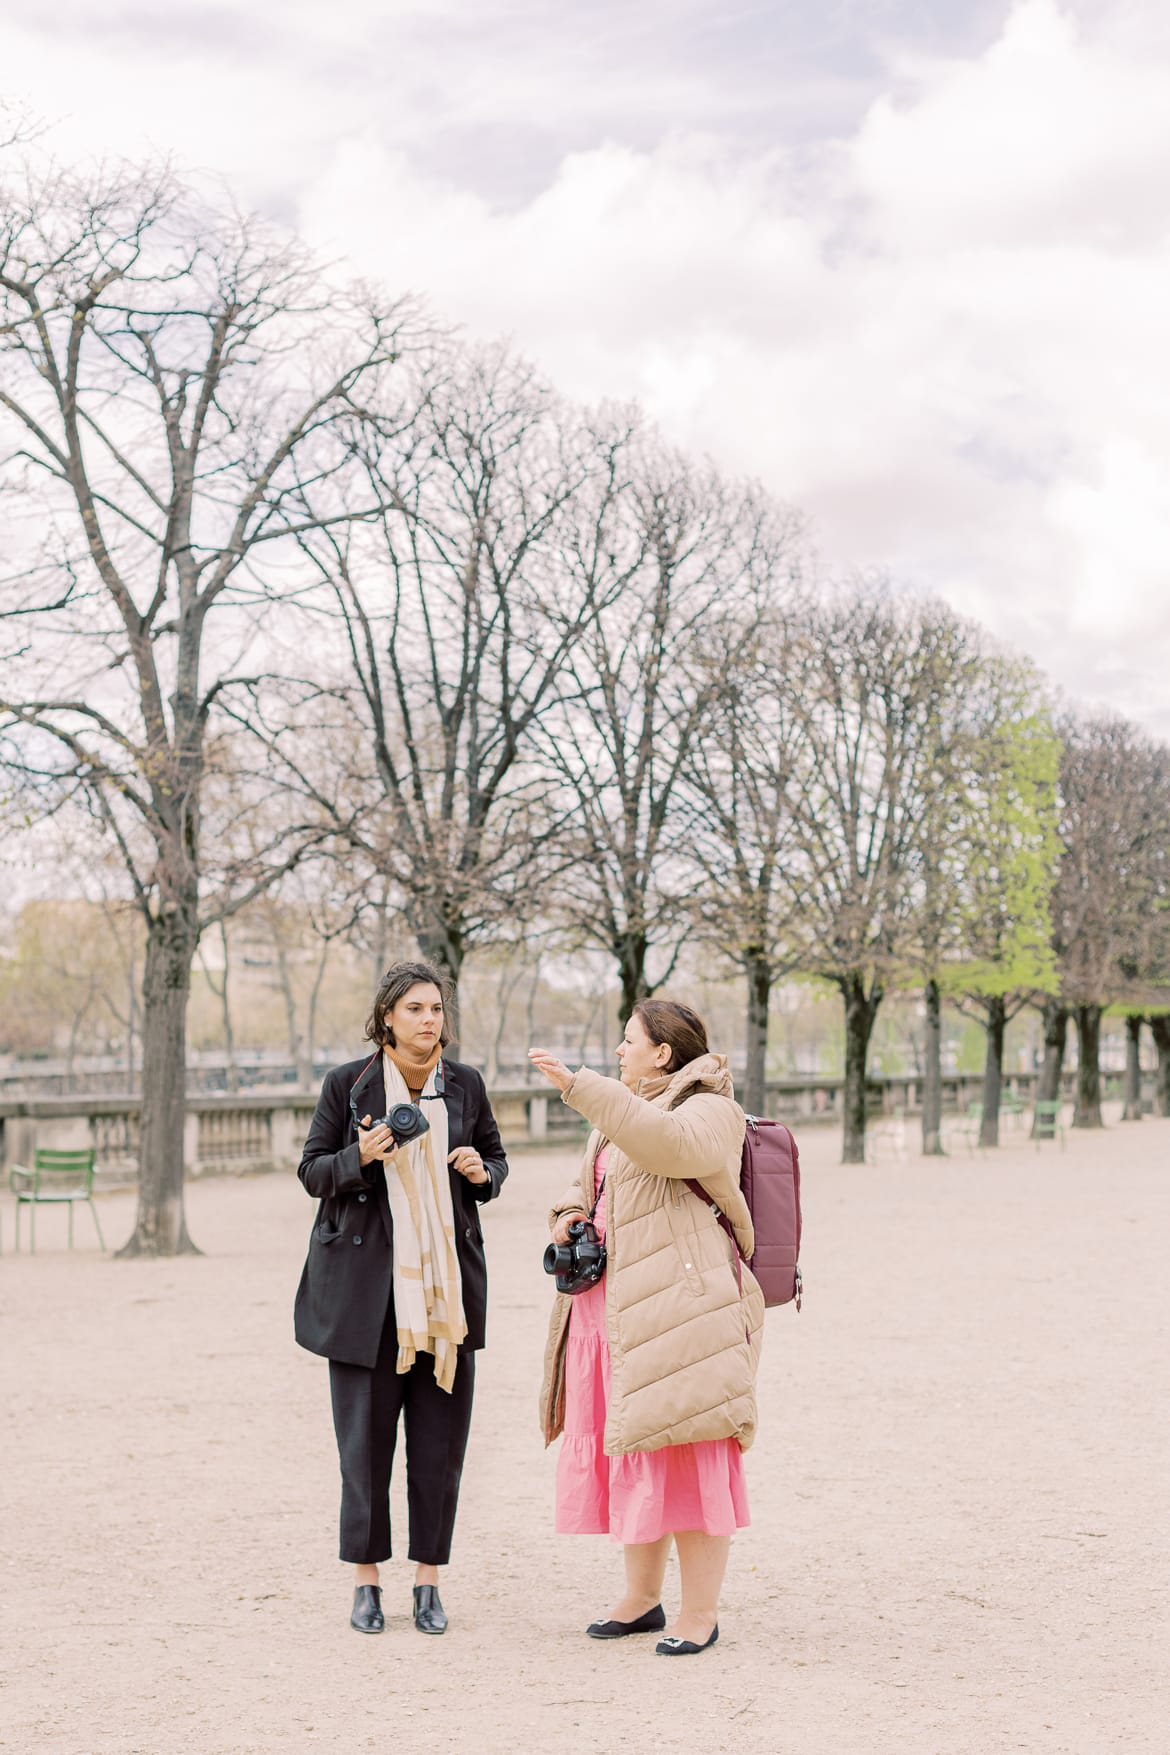 Fotografinnen reden in einem Park miteinander